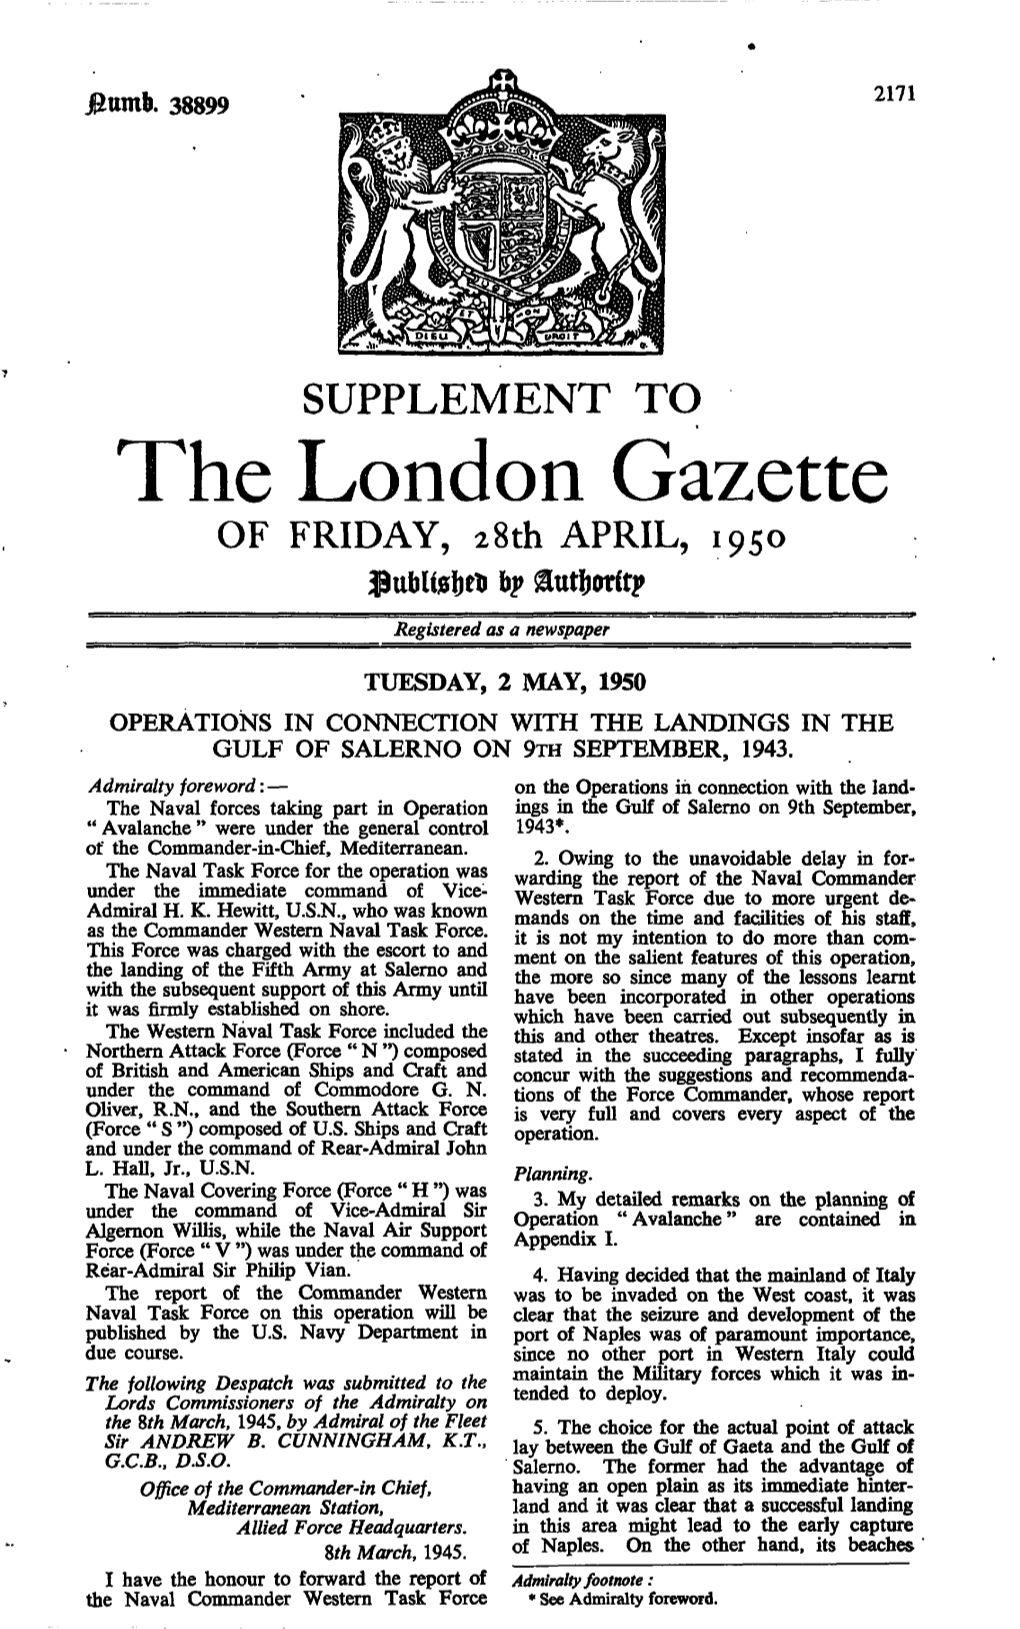 The London Gazette of FRIDAY, 28Th APRIL, 1950 $Ttt)Ugi)Tt 6?